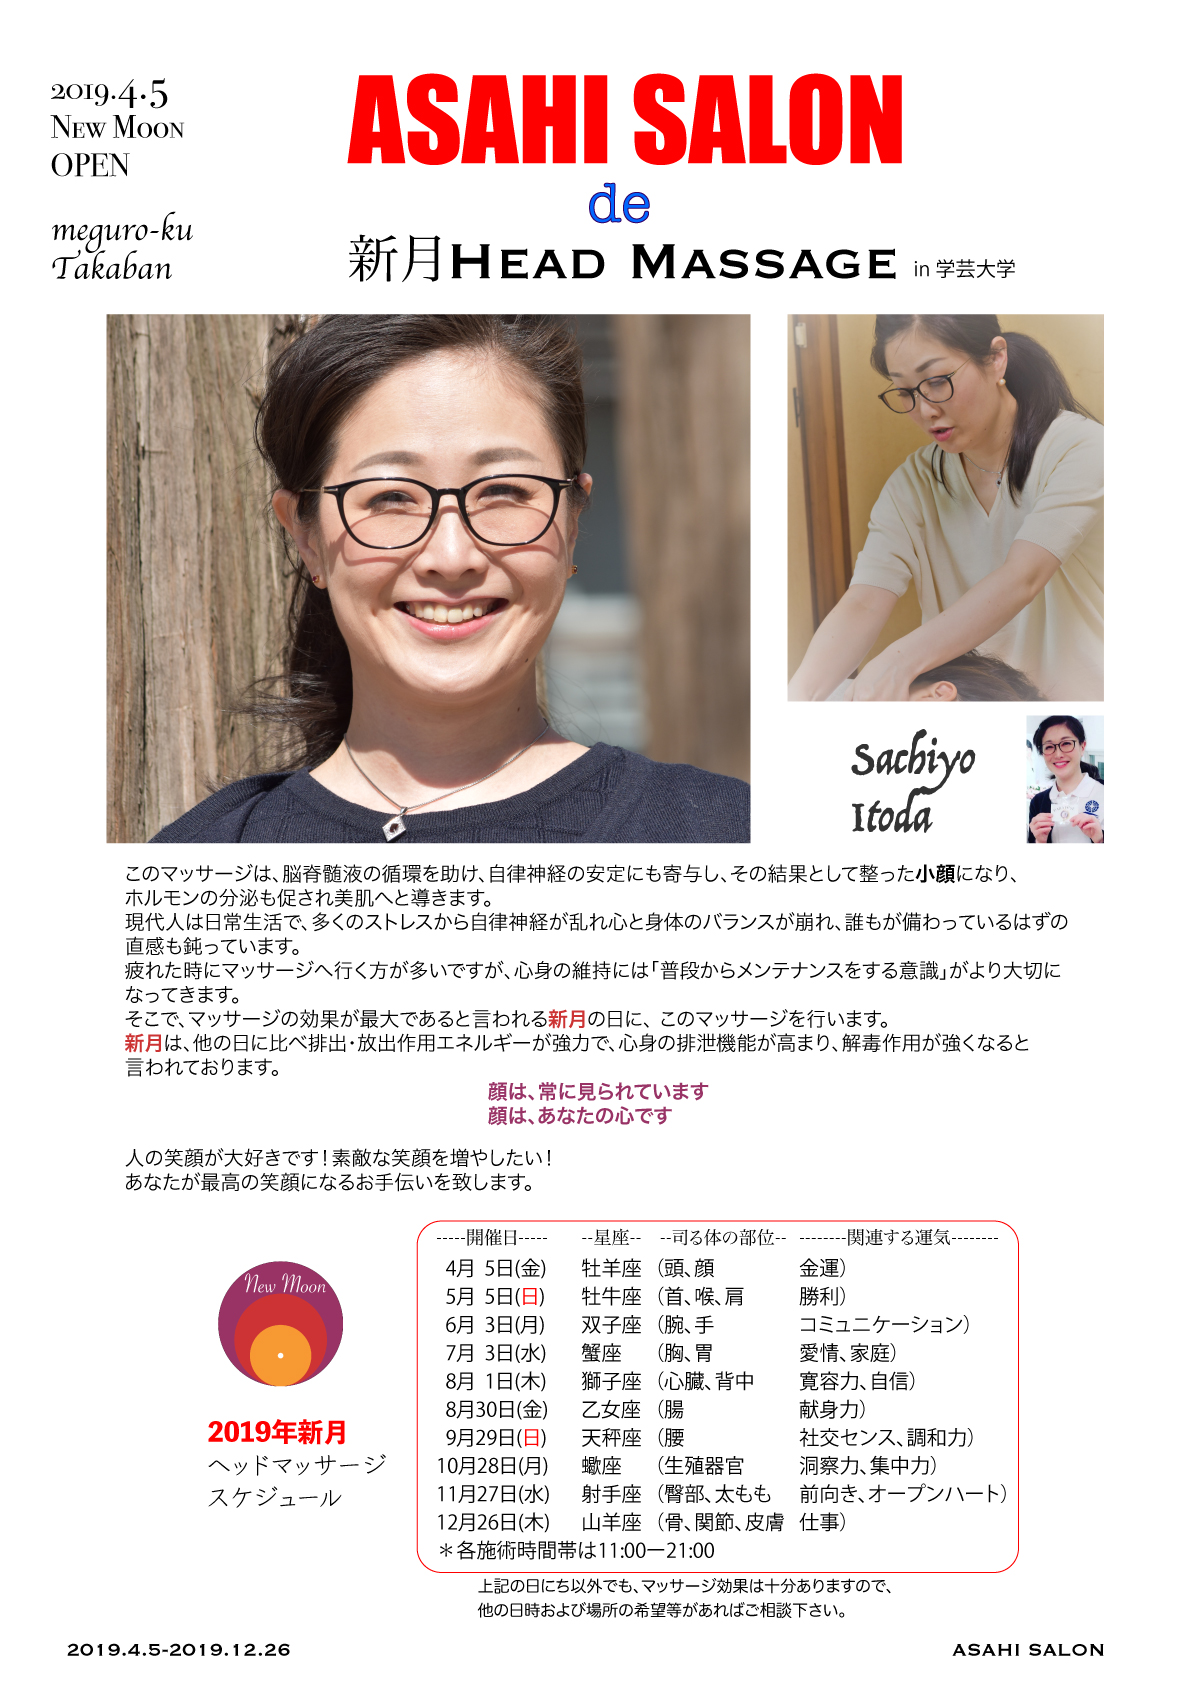 HEAD MASSAGE